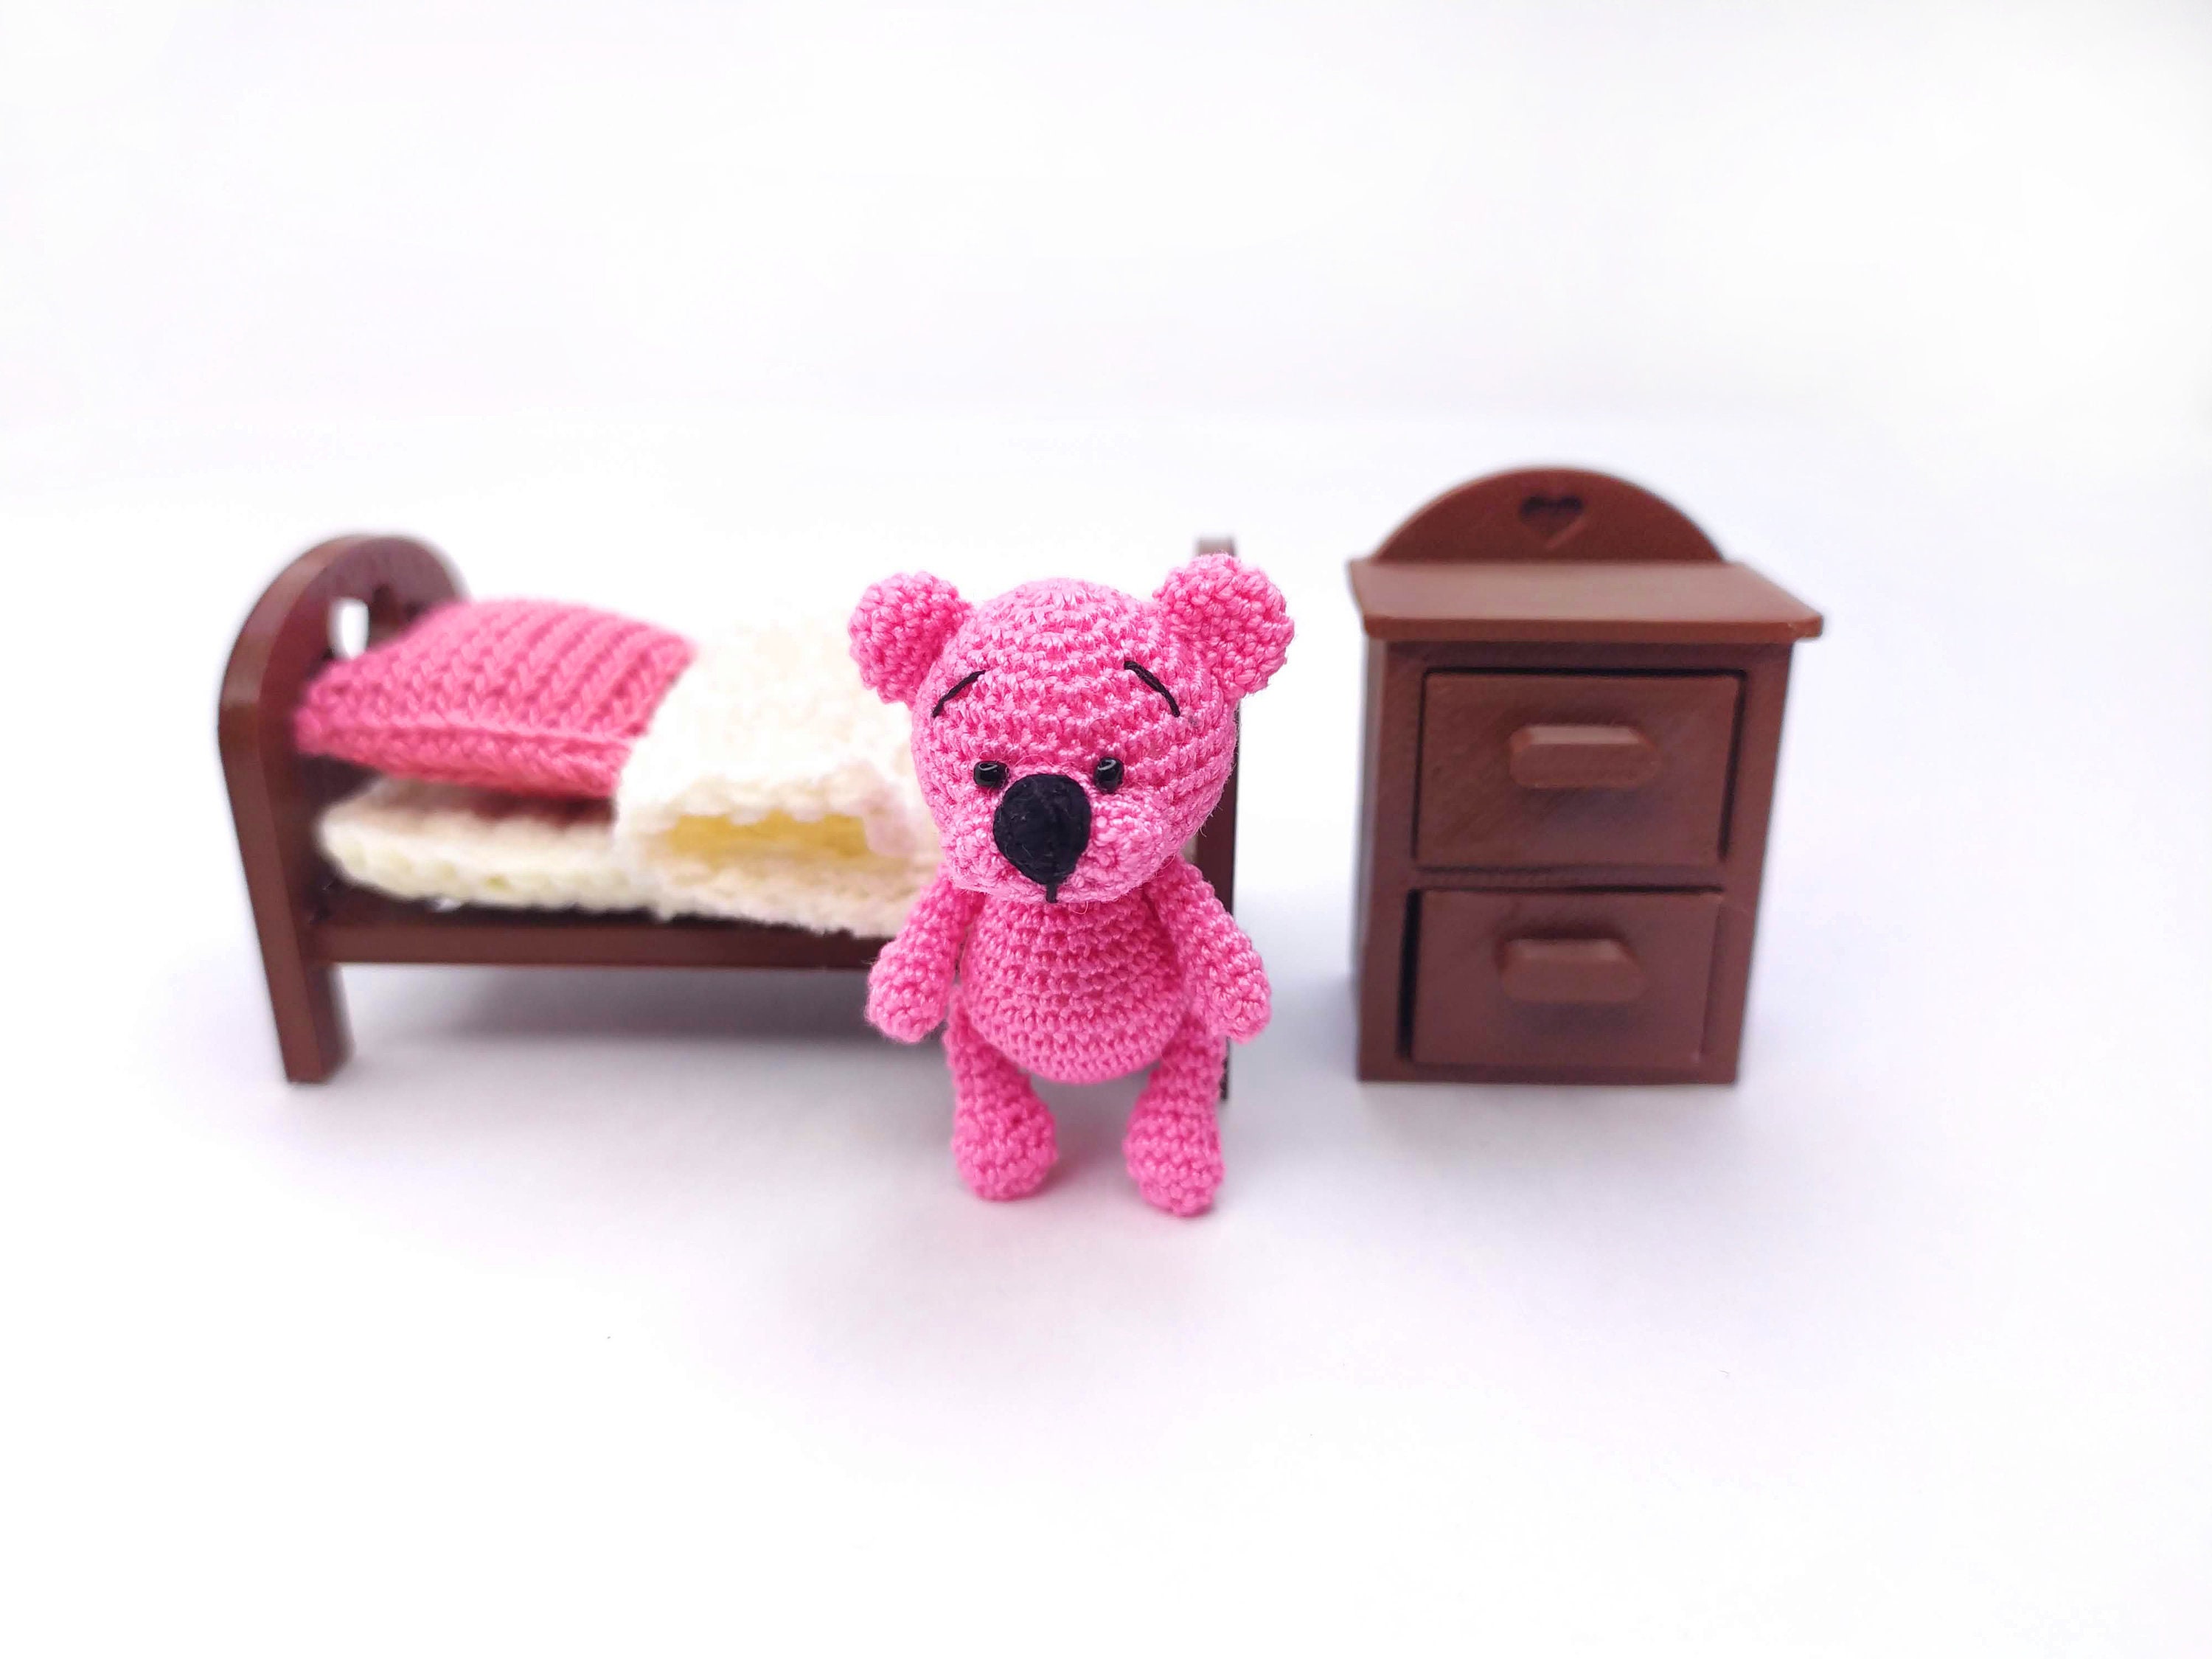 Miniature teddy bear for dollhouse care bear for tiny house | Etsy